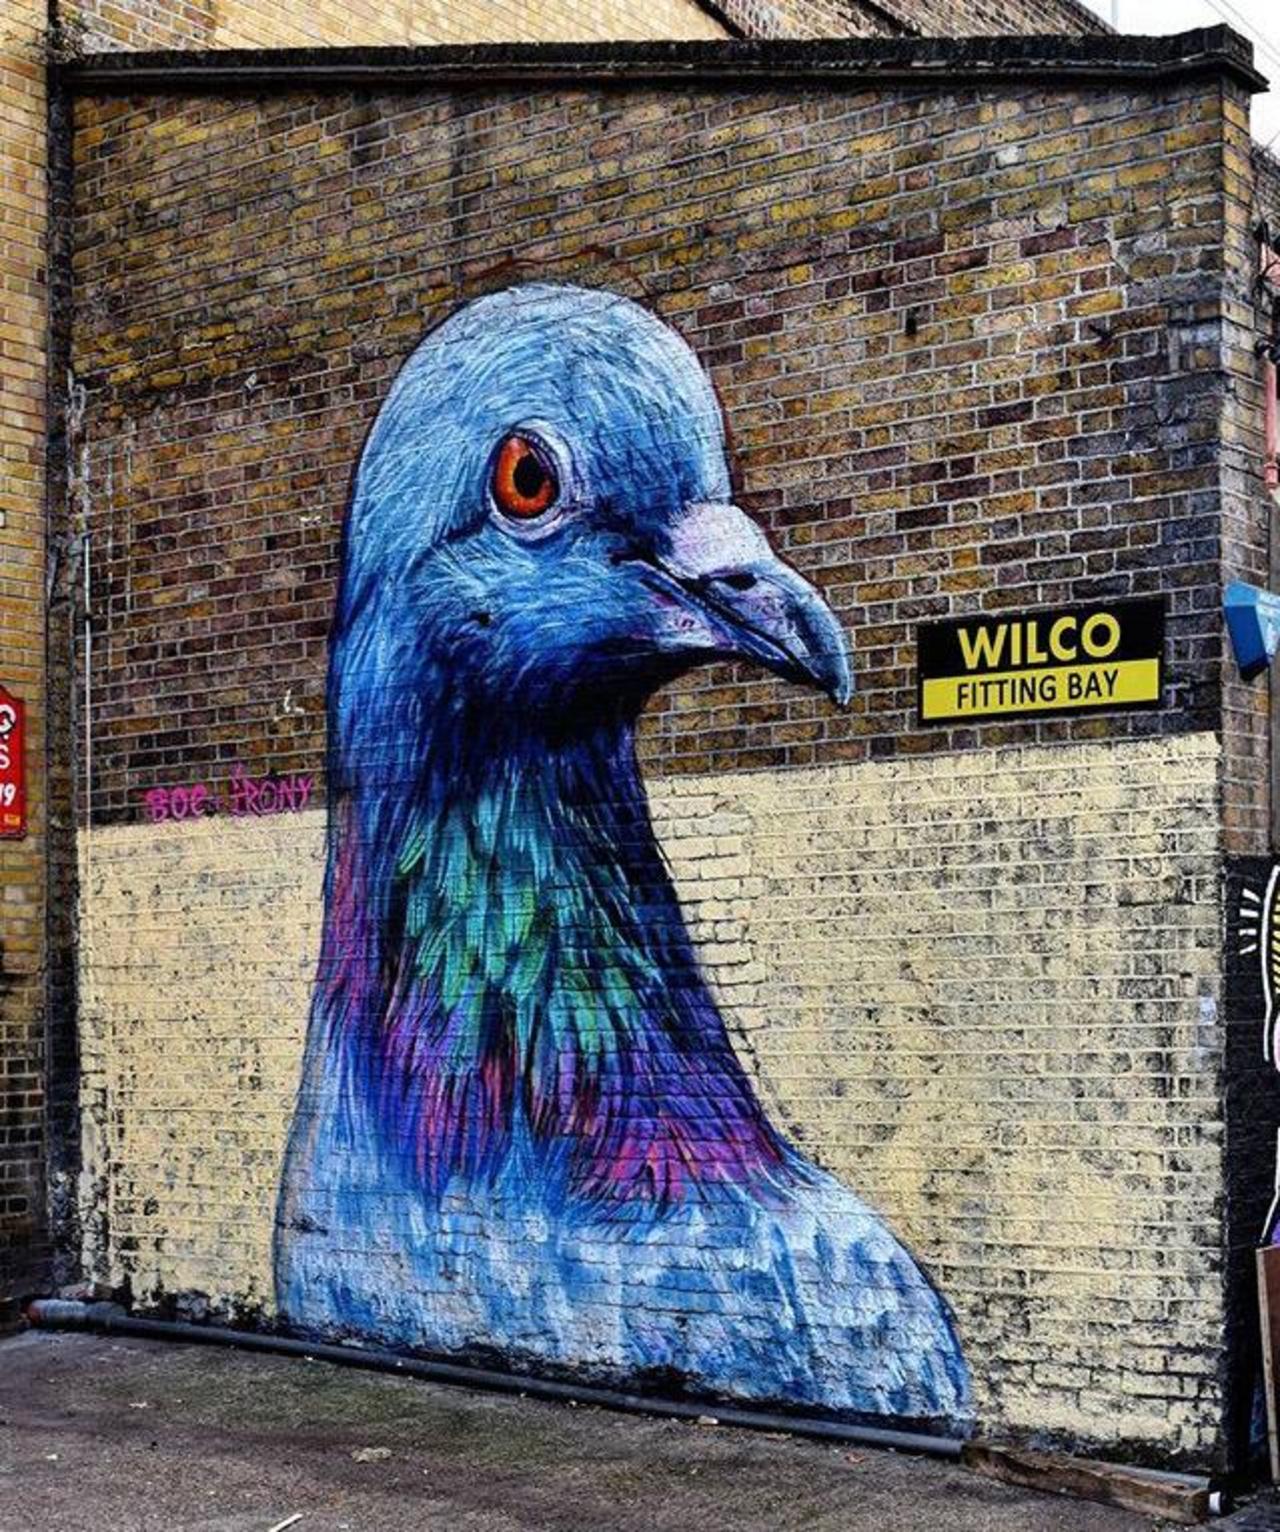 Street Art by Placee Boe & whoamirony in London 

#art #graffiti #mural #streetart http://t.co/UR7a0SL6EG